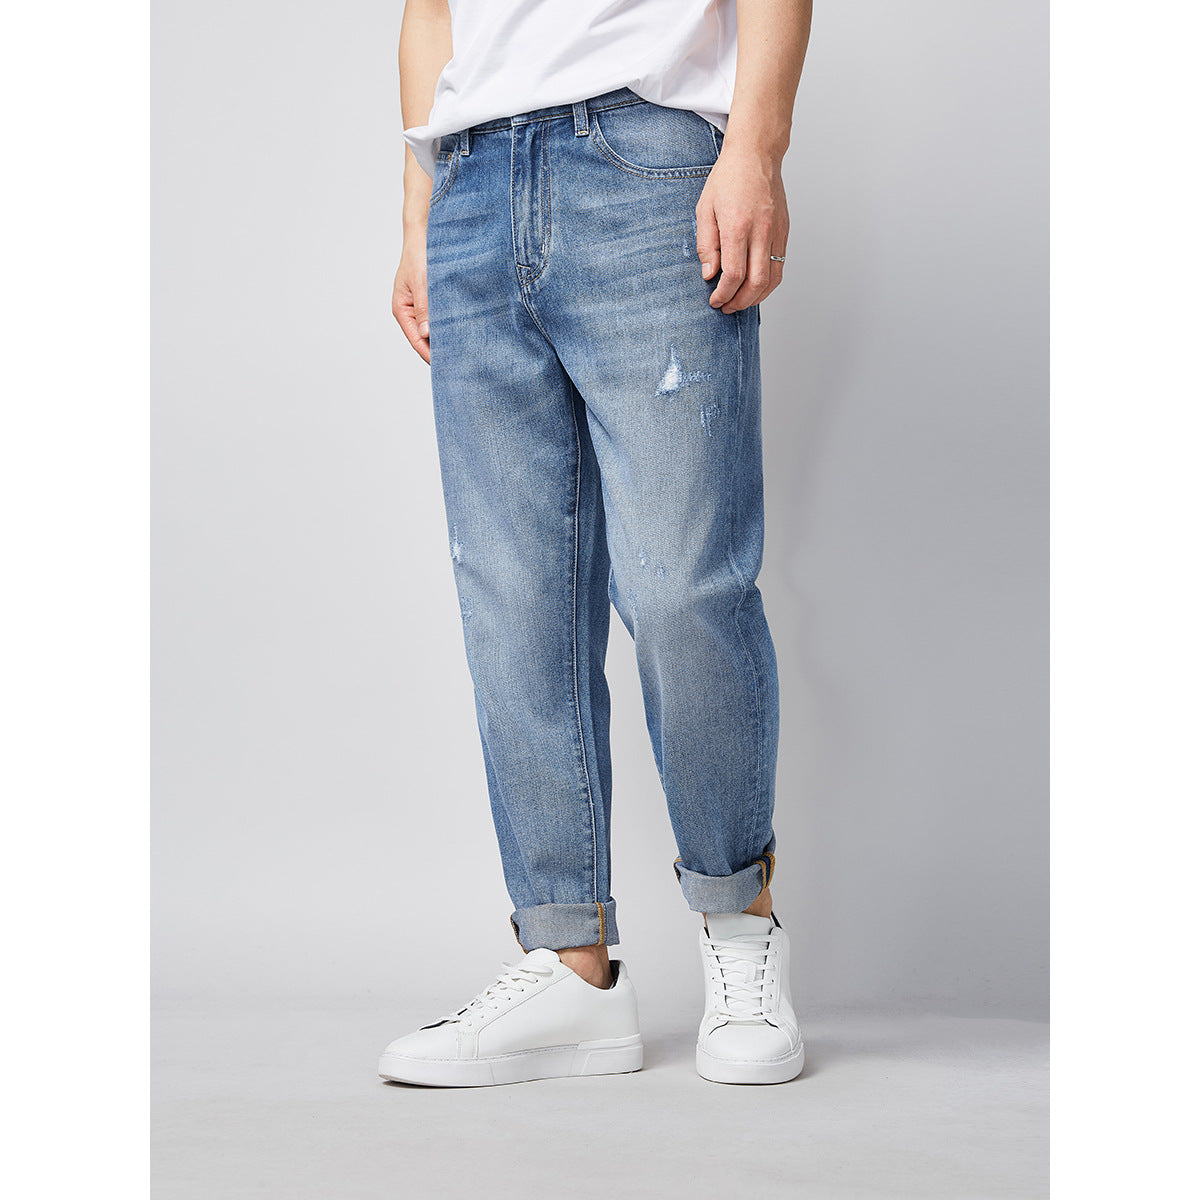 Jeans Men'S Casual Pants